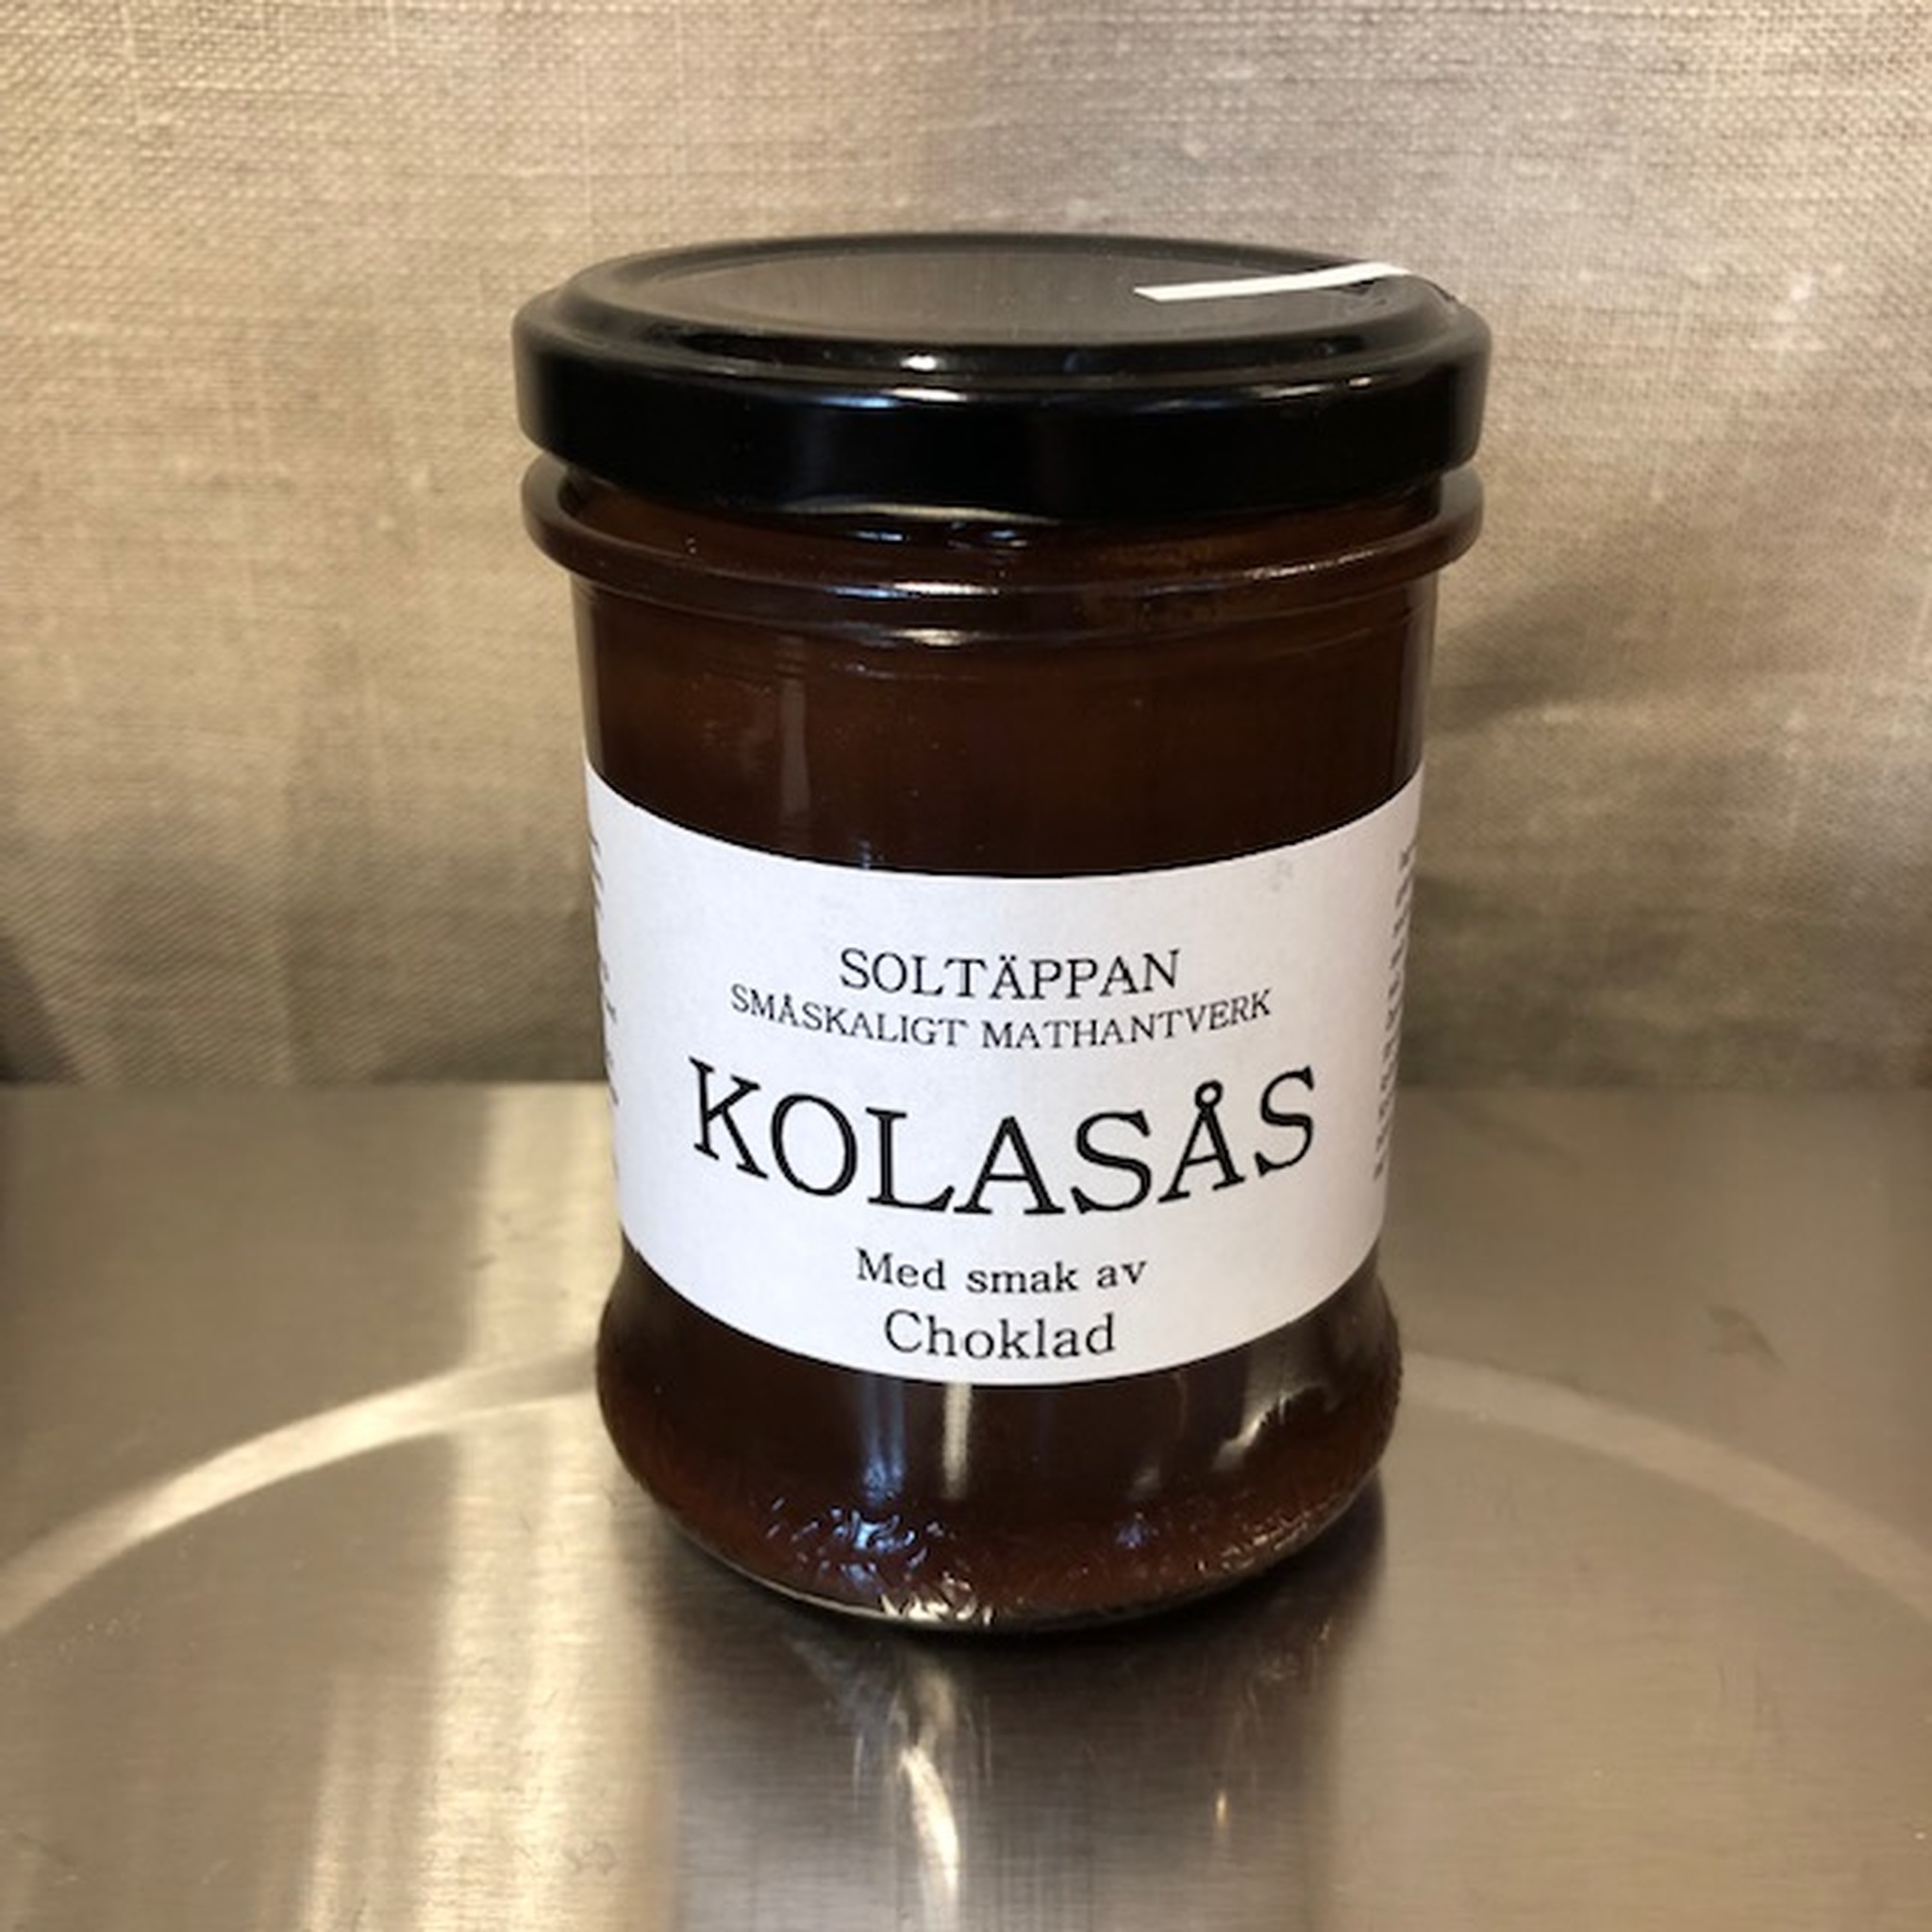 Soltäppans Kolasås, 220g - Finns i flera smaker